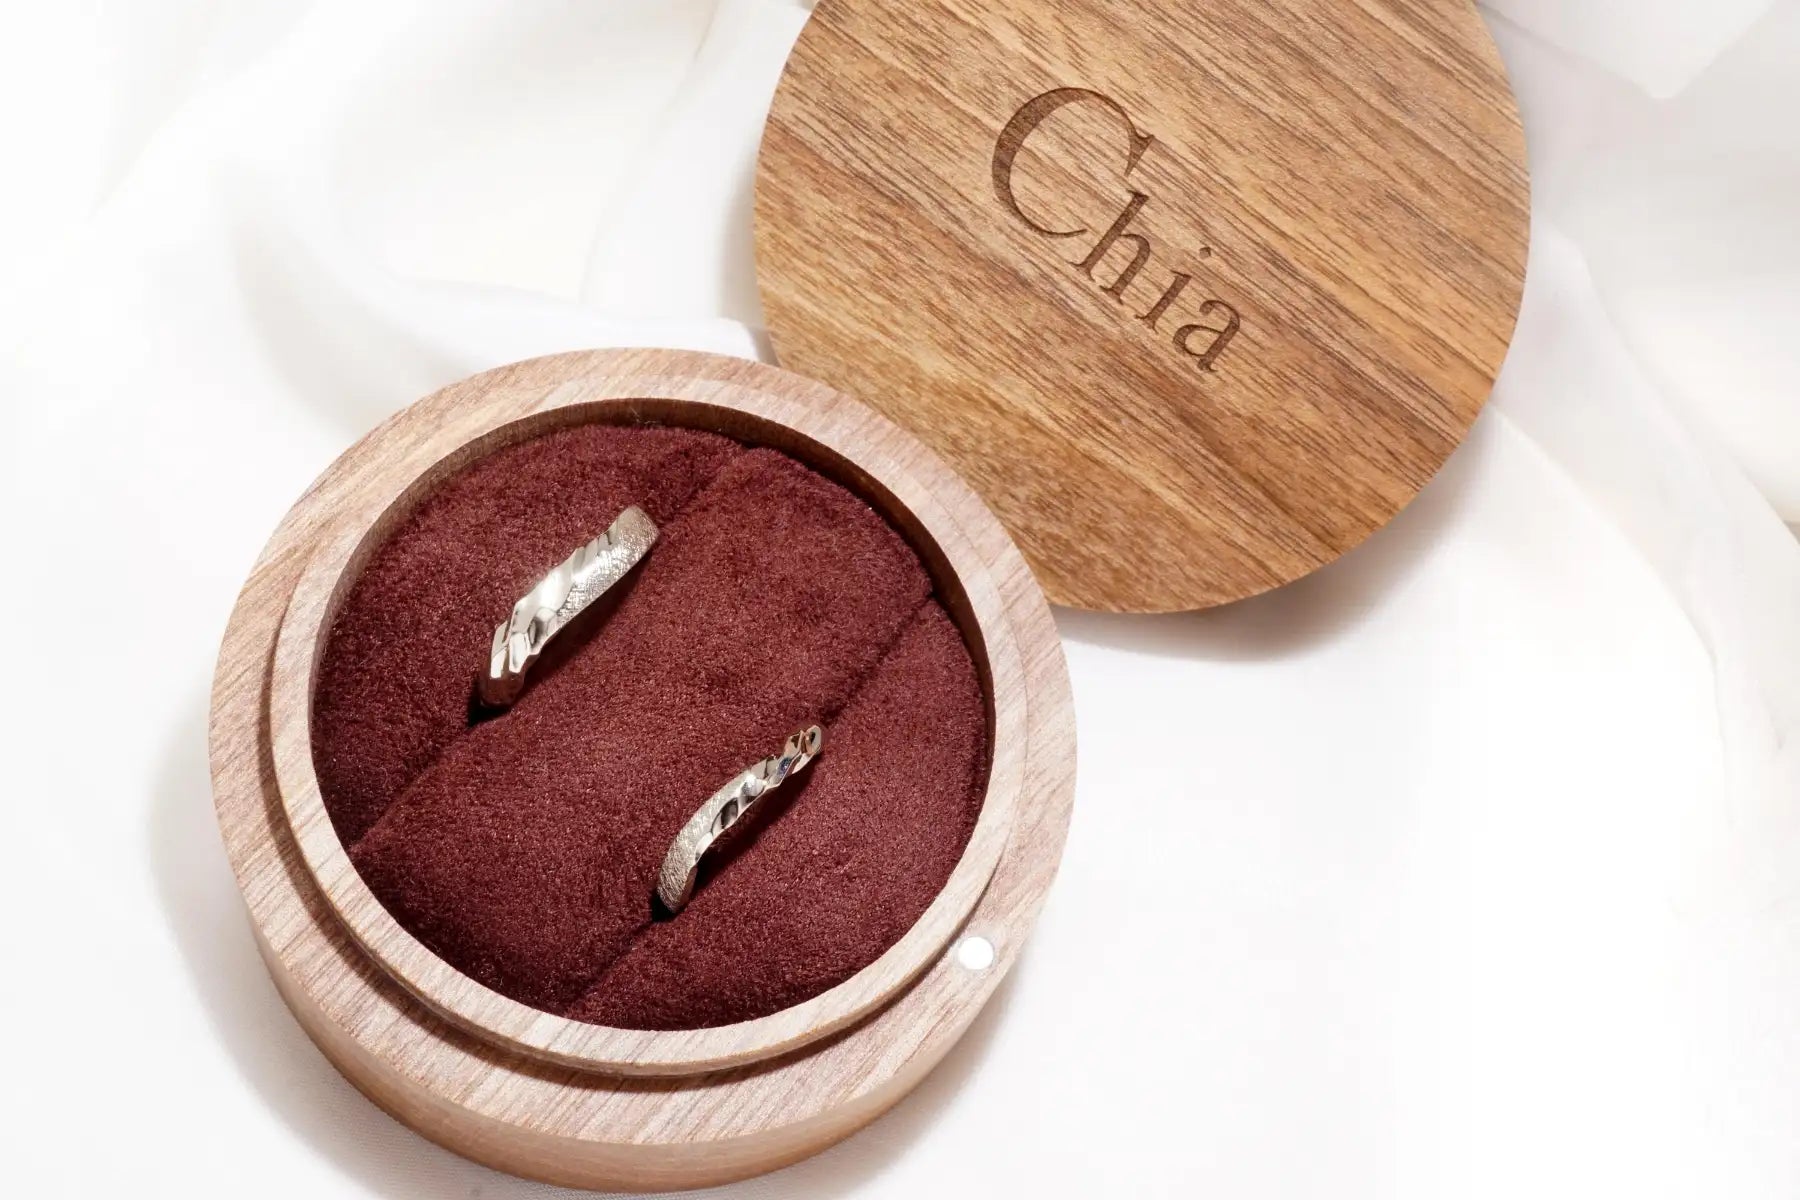 chia jewelry婚戒對戒與鑽戒訂製設計指南介紹